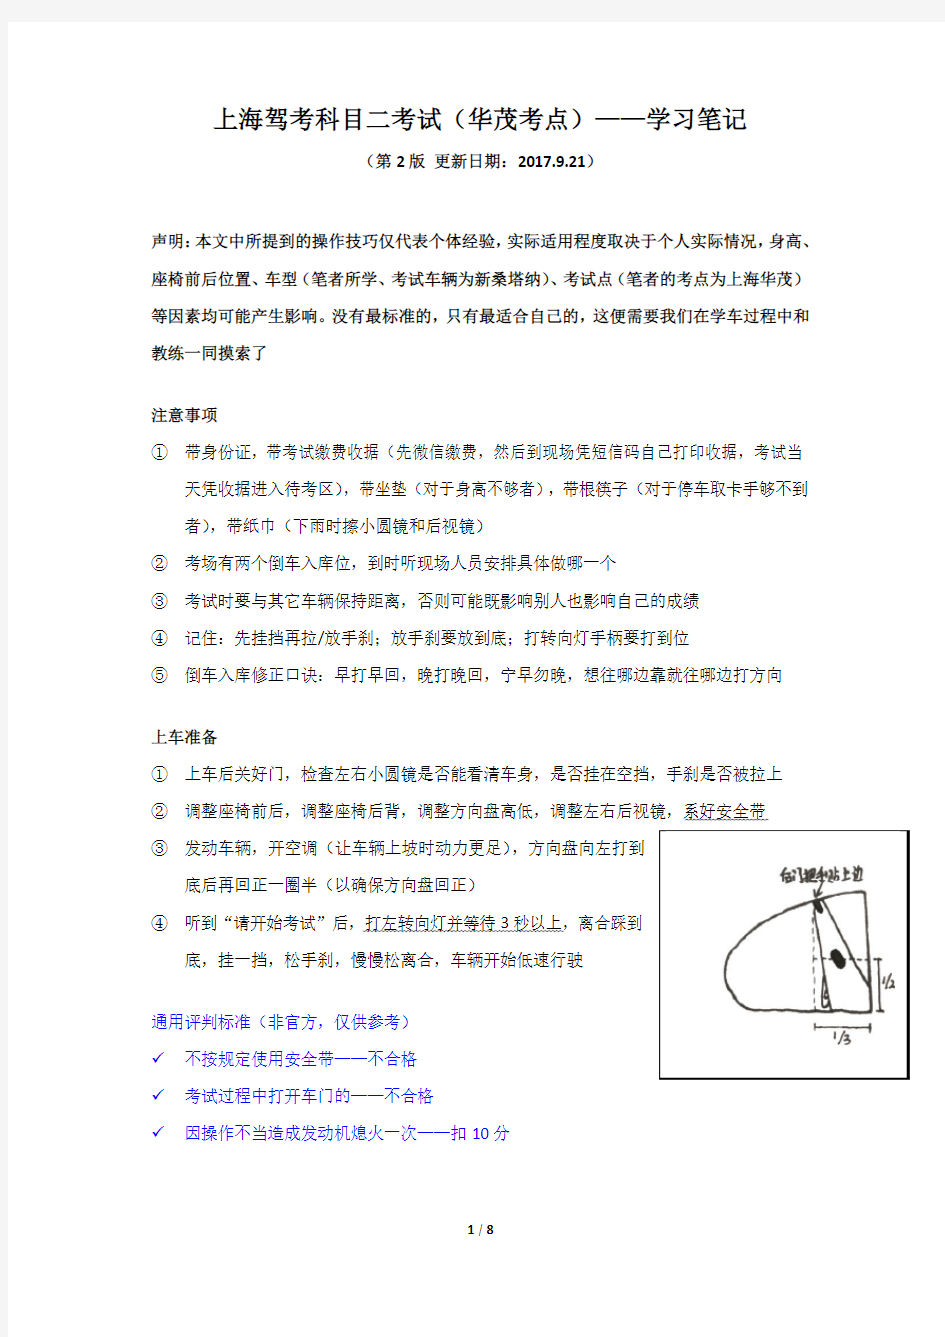 上海驾考科目二考试(华茂考点)——学习笔记